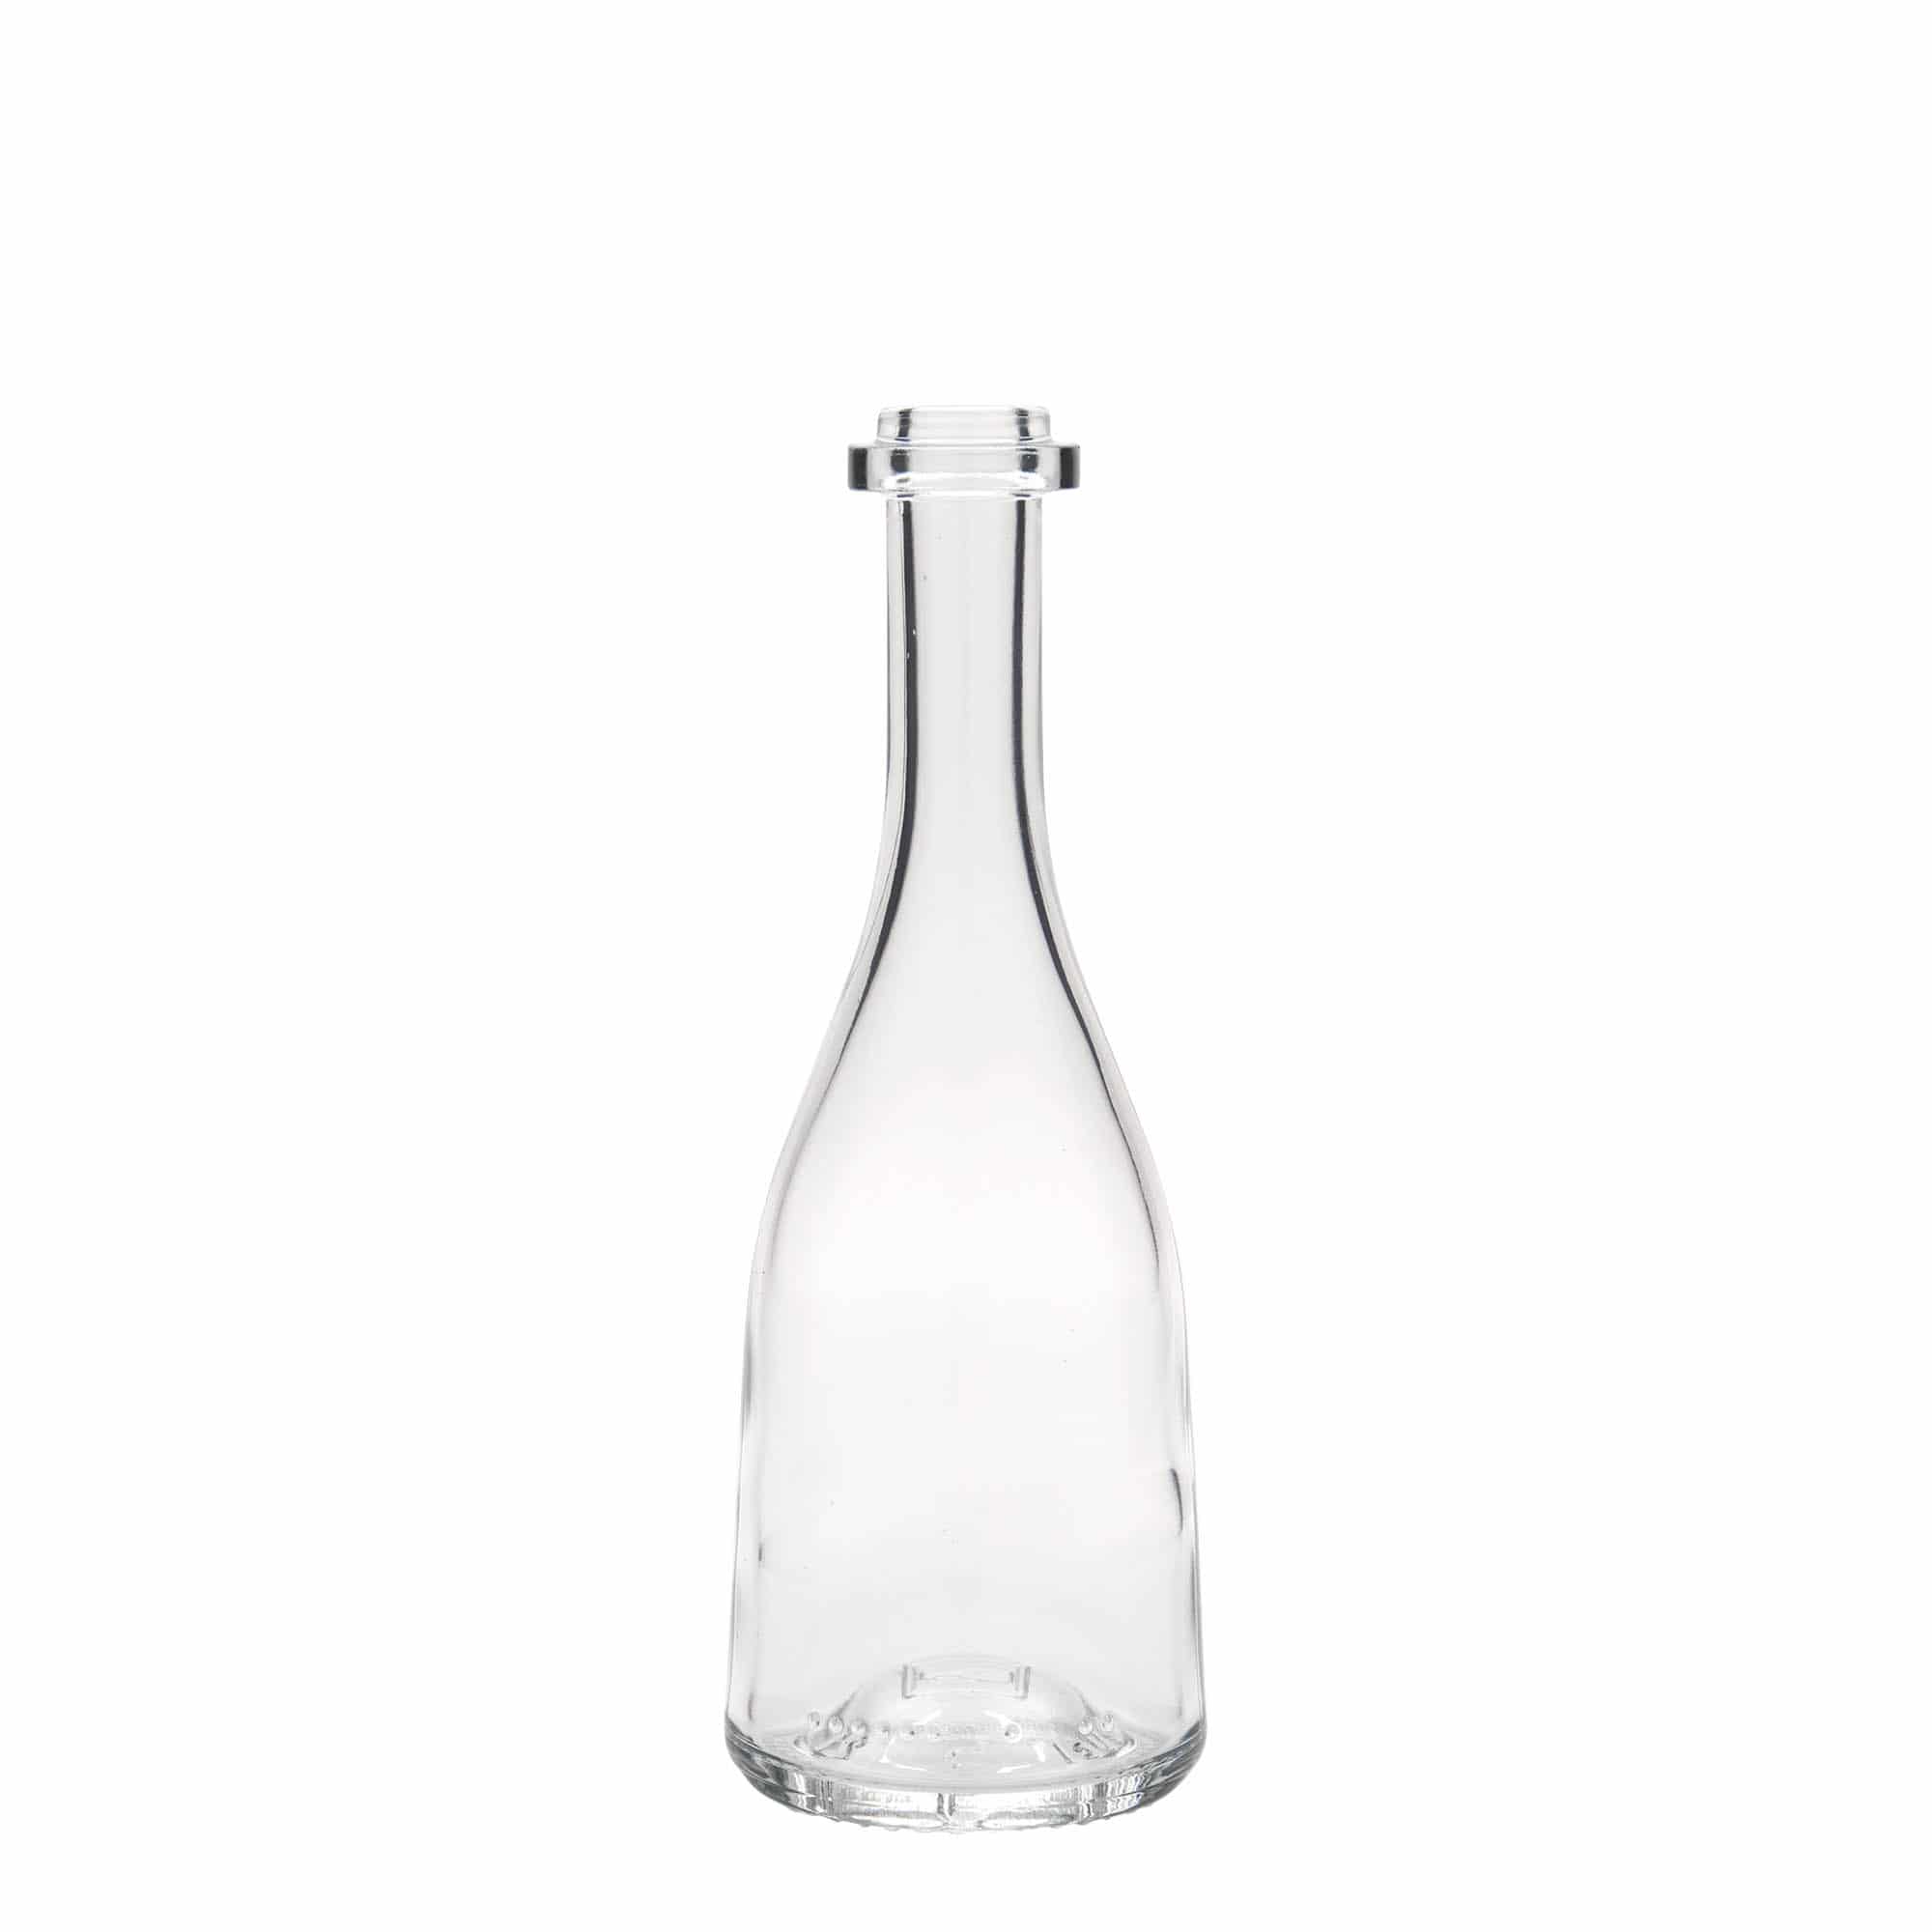 200 ml glass bottle 'Rustica', closure: cork